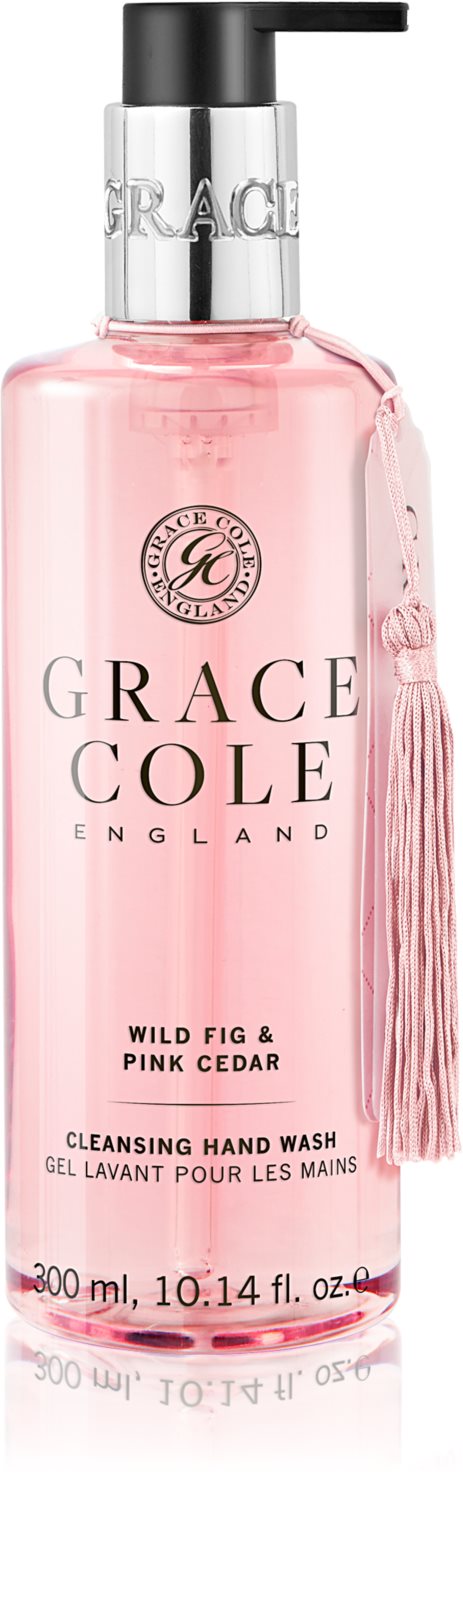 GRACE COLE: Wild Fig & Pink Cedar